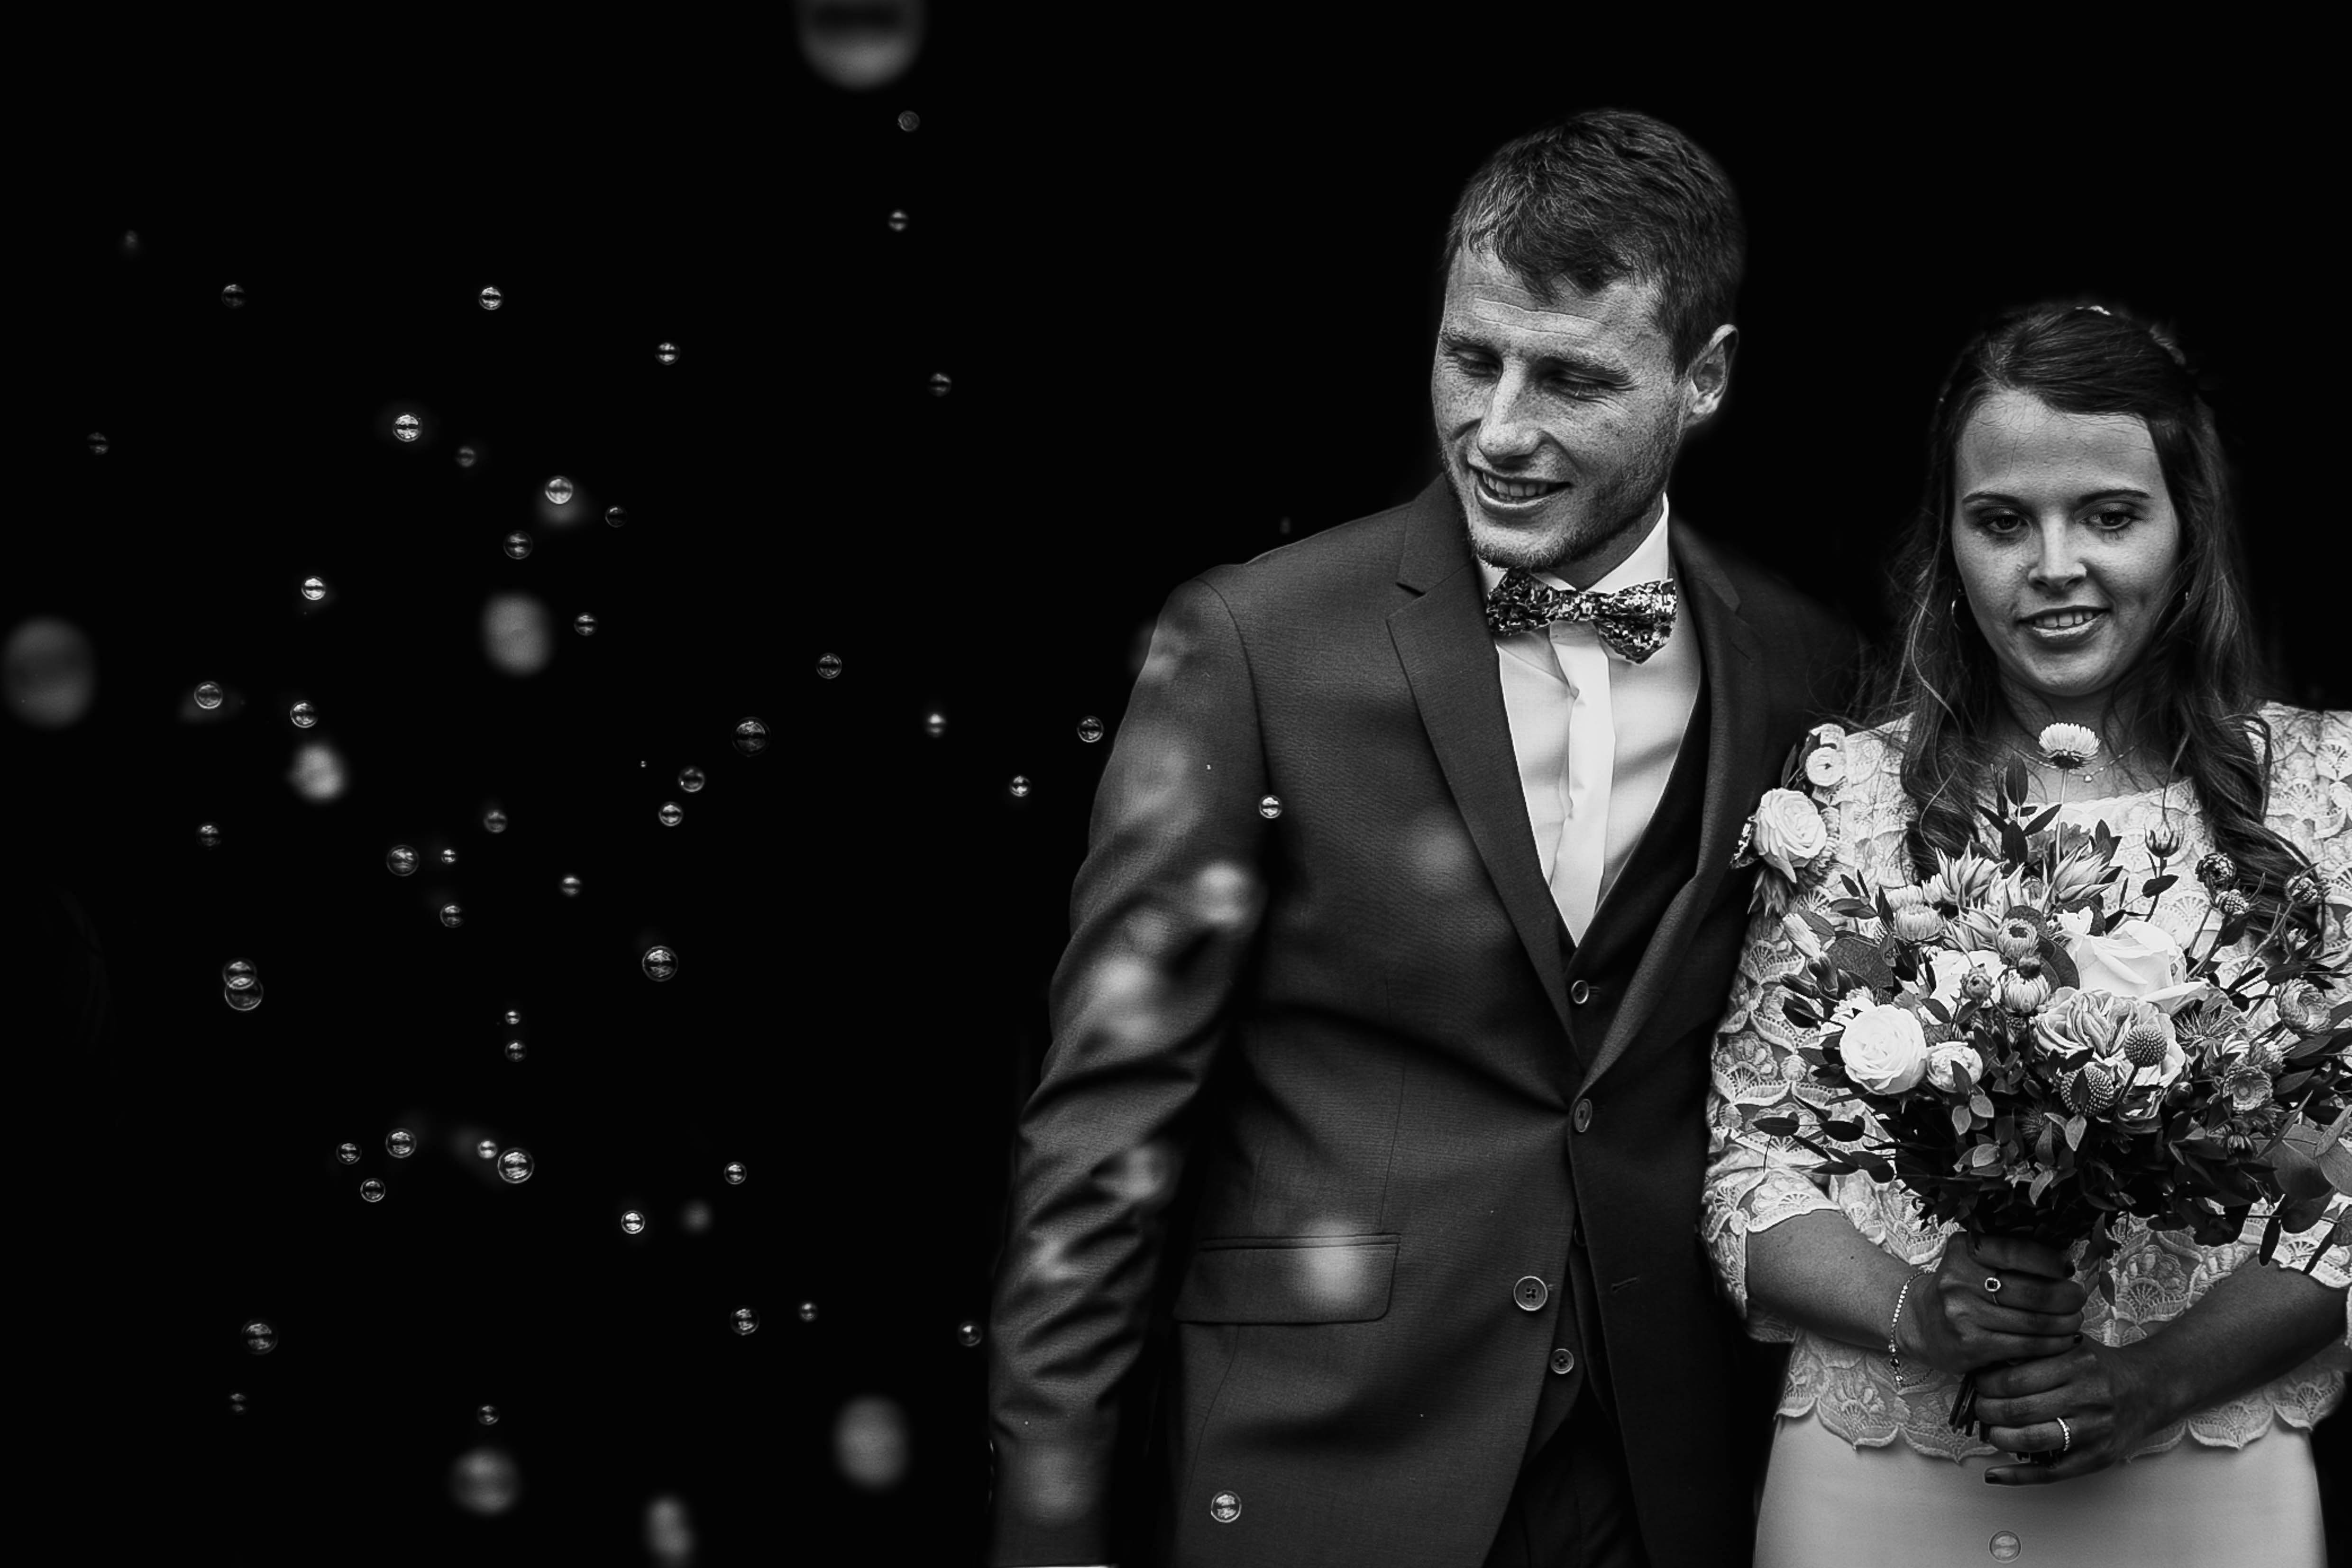 photographe mariage - normandie - calvados - sortie eglise avec bulles - mariage champetre en normandie - boheme chic